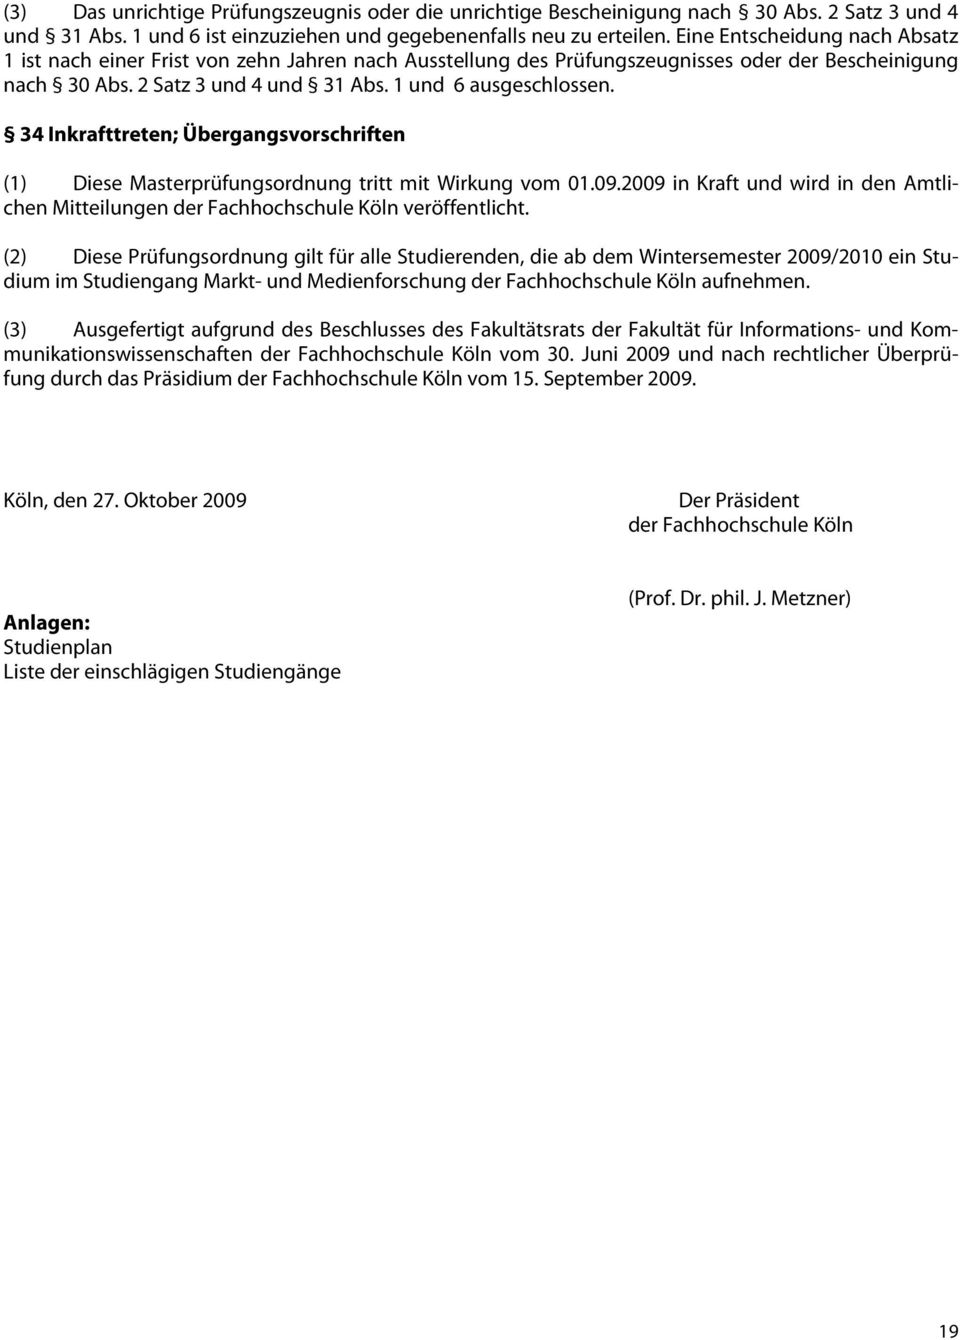 34 Inkrafttreten; Übergangsvorschriften (1) Diese Masterprüfungsordnung tritt mit Wirkung vom 01.09.2009 in Kraft und wird in den Amtlichen Mitteilungen der Fachhochschule Köln veröffentlicht.